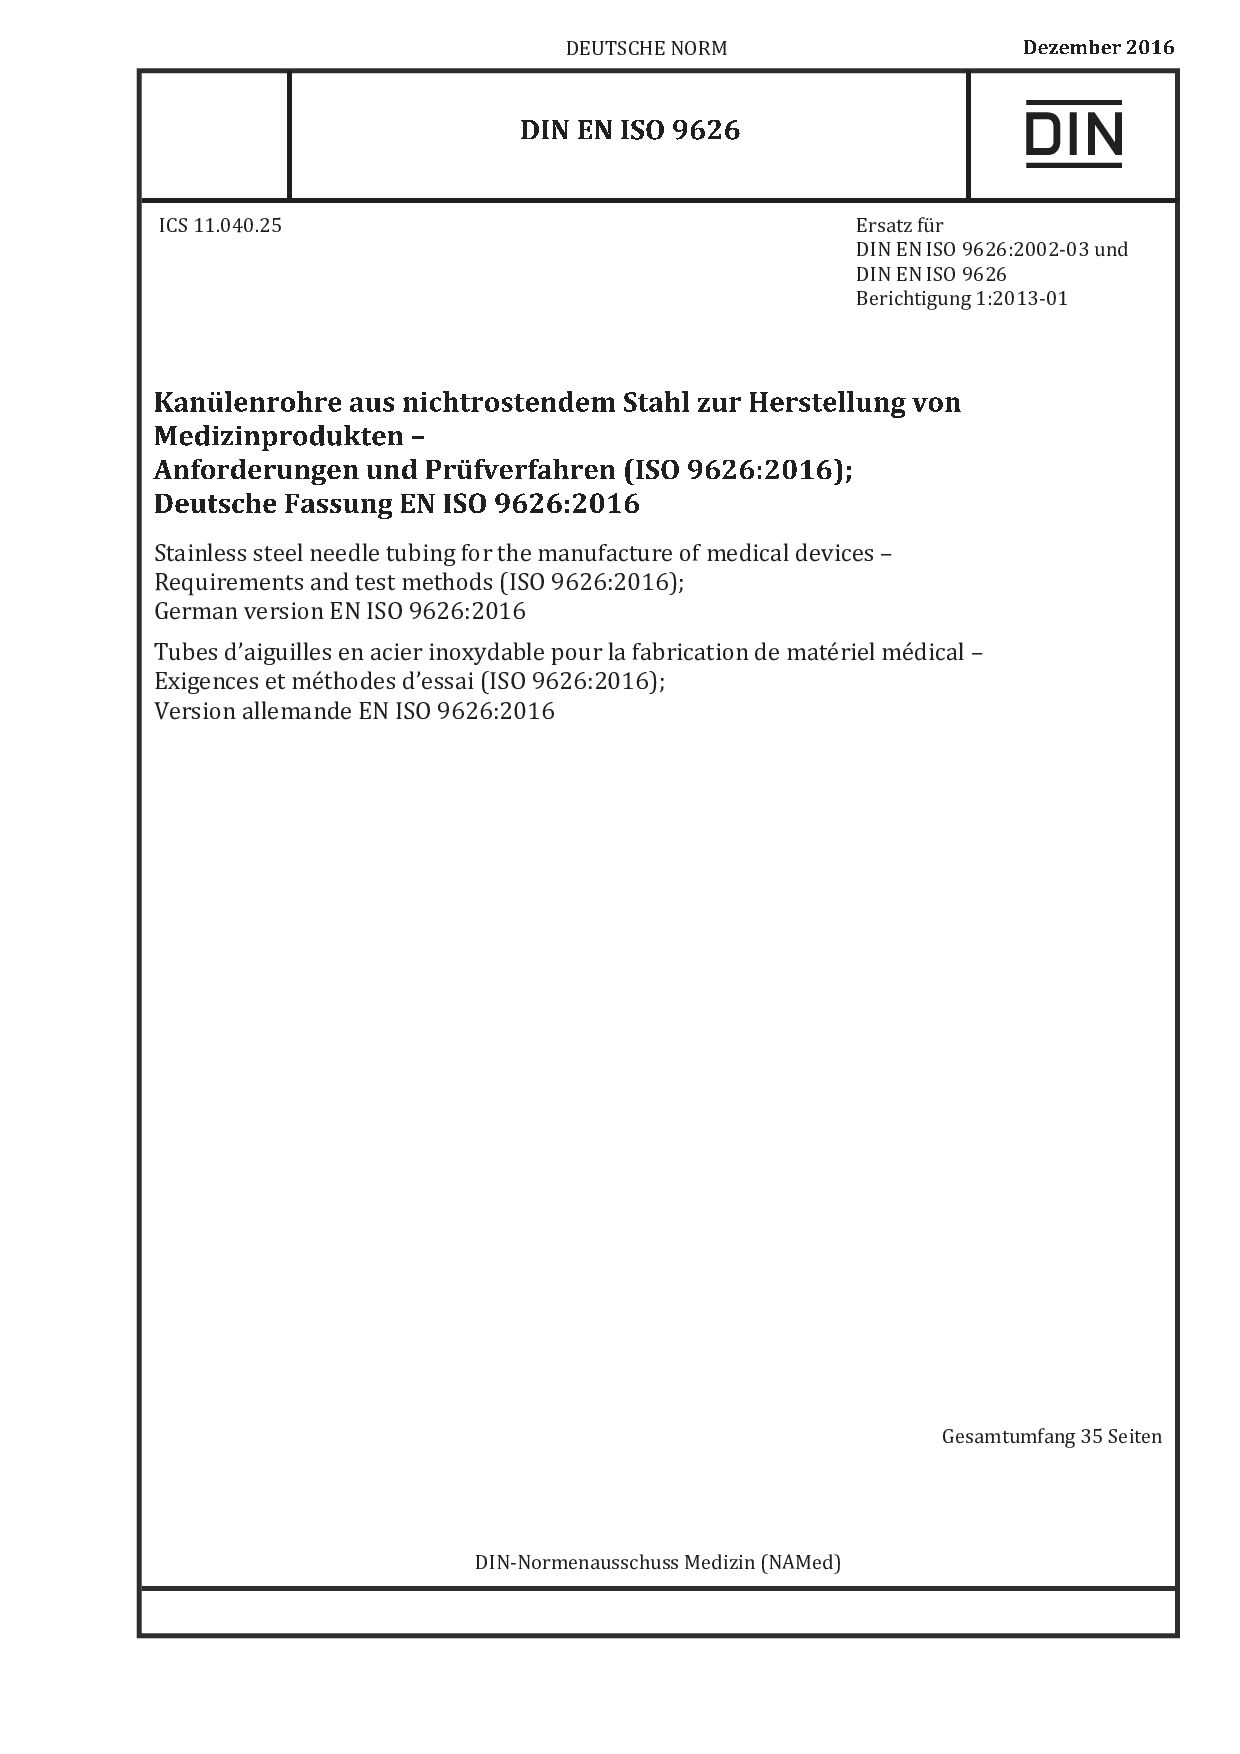 DIN EN ISO 9626:2016-12